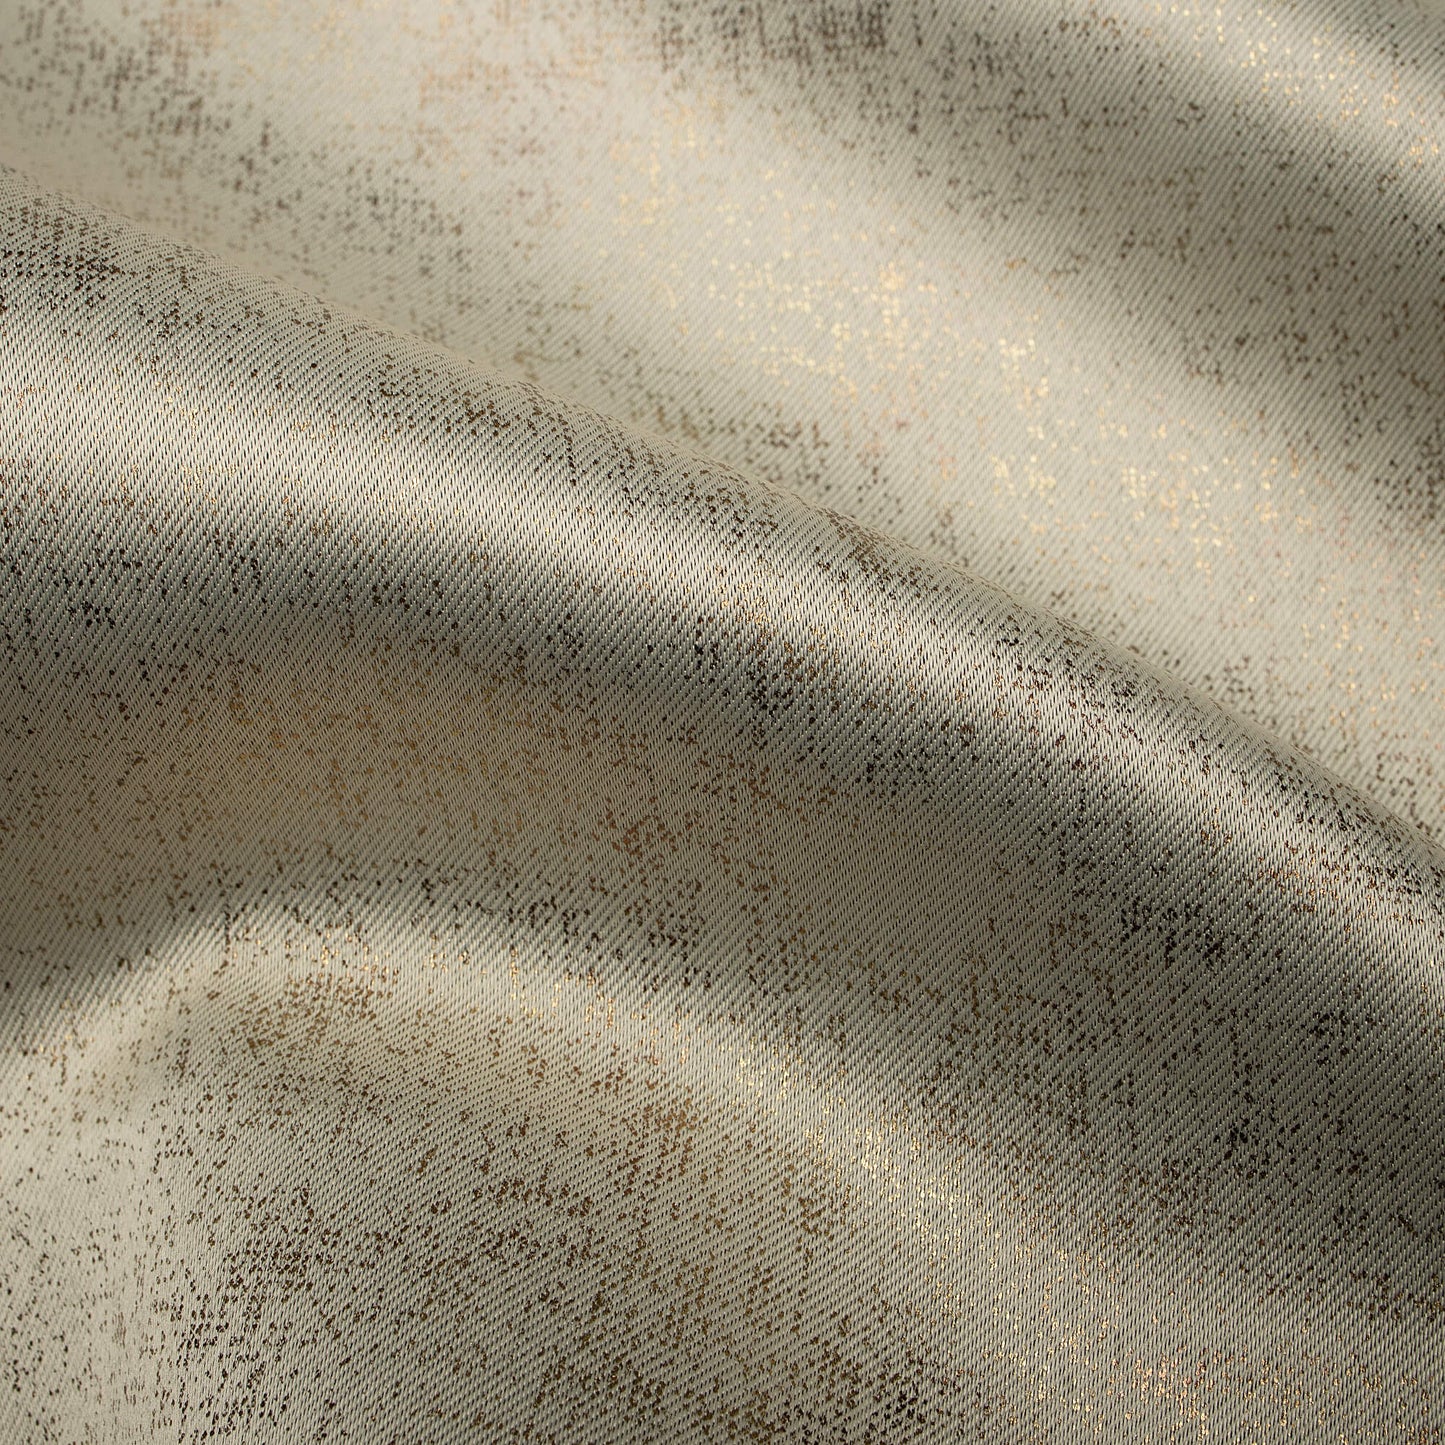 Tan Beige Geometric Pattern Golden Foil Premium Curtain Fabric (Width 54 Inches)